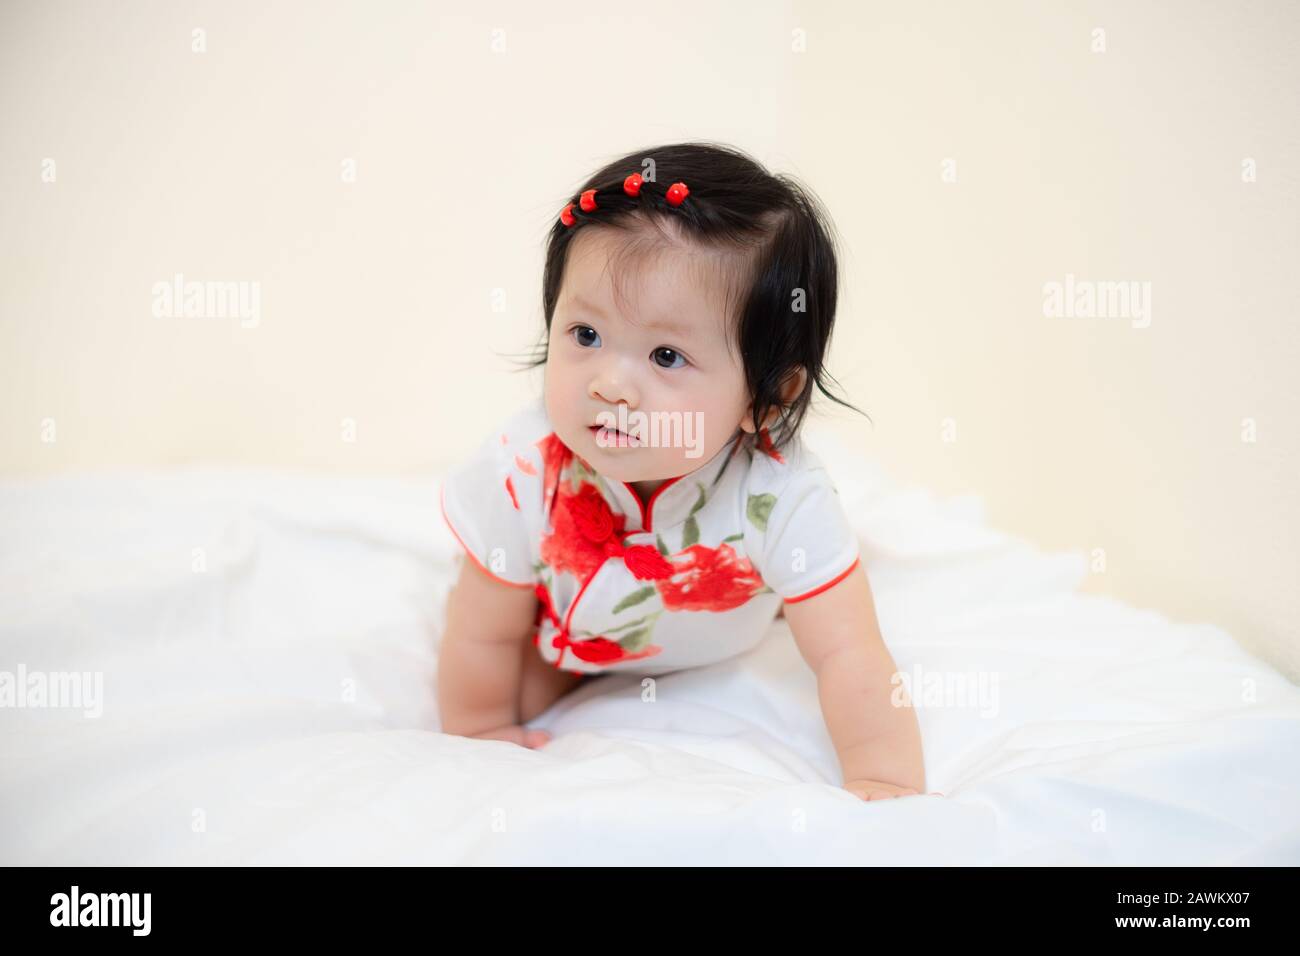 Asian Thai Baby Girl in Cheongsam Dress, Chinese New Year Stock Photo ...